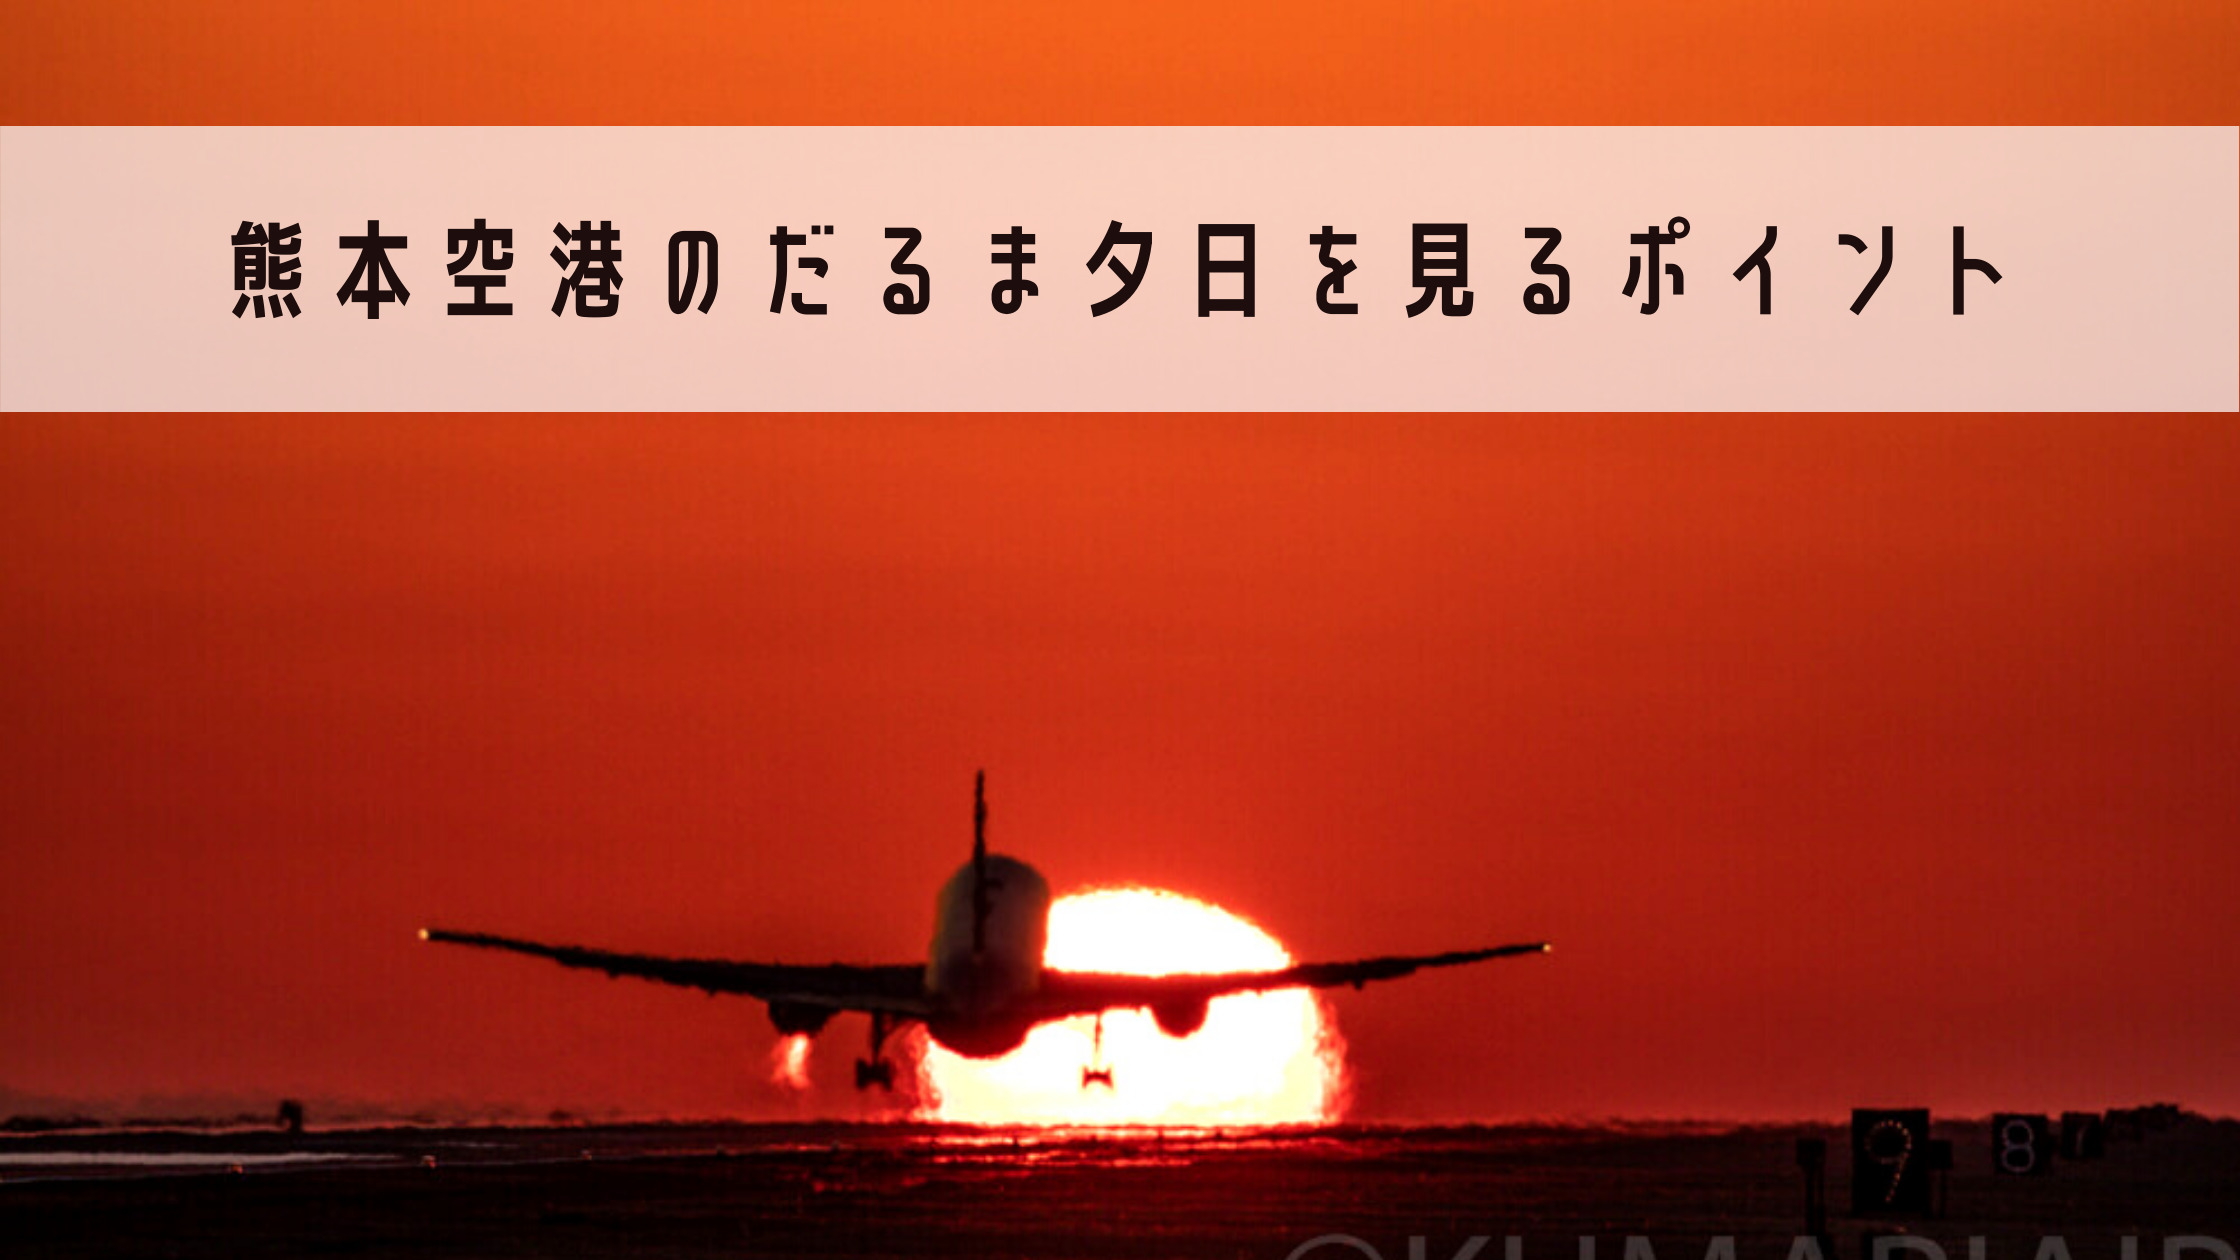 熊本空港 飛行機と滑走路に沈むだるま夕日の撮影ポイントとは ベストシーズン 撮影ポイントを詳しく解説します シテイリョウコウ